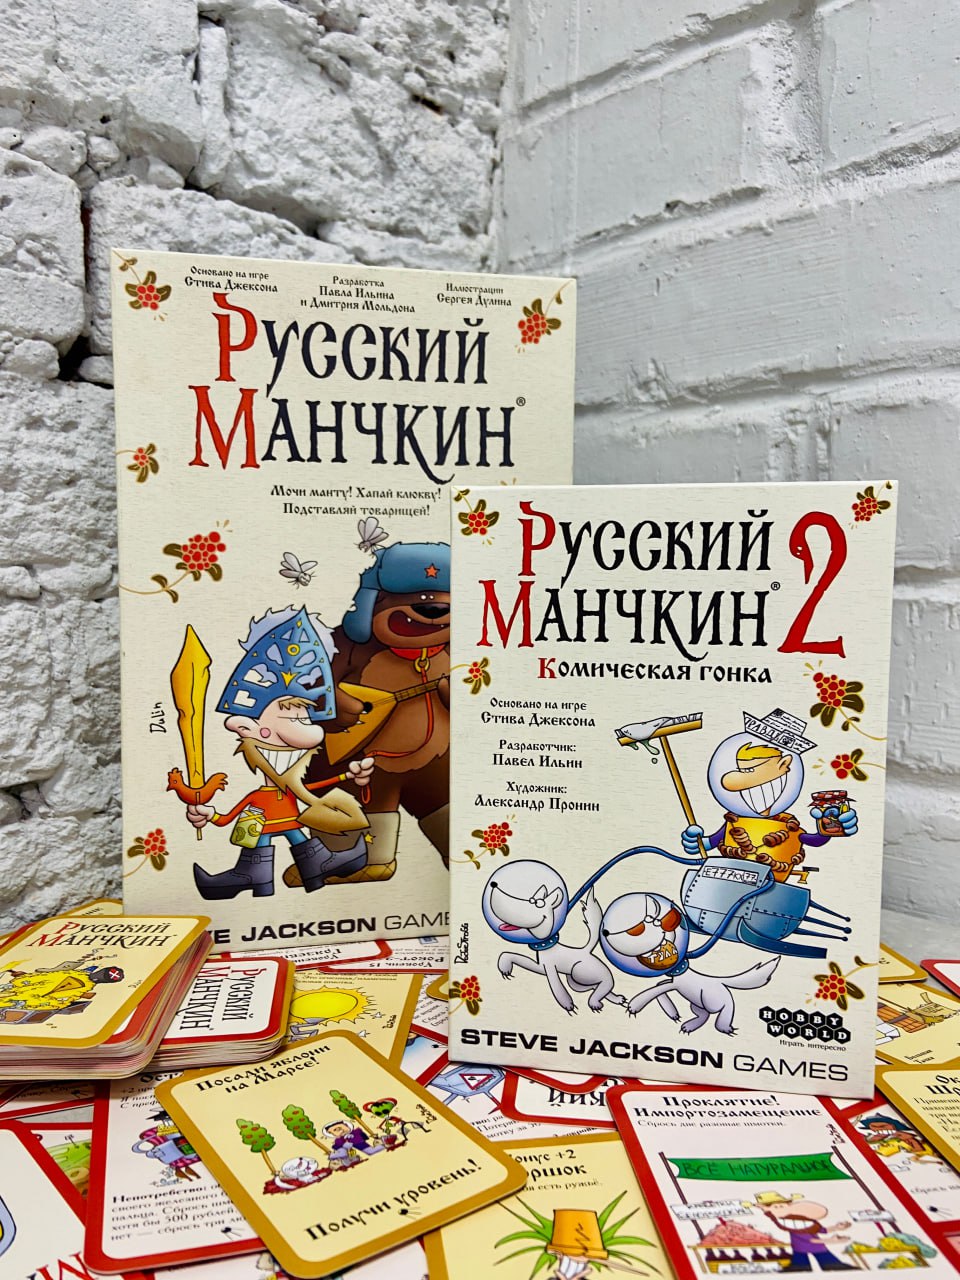 «Русский Манчкин 2: Комическая гонка» уже в продаже!